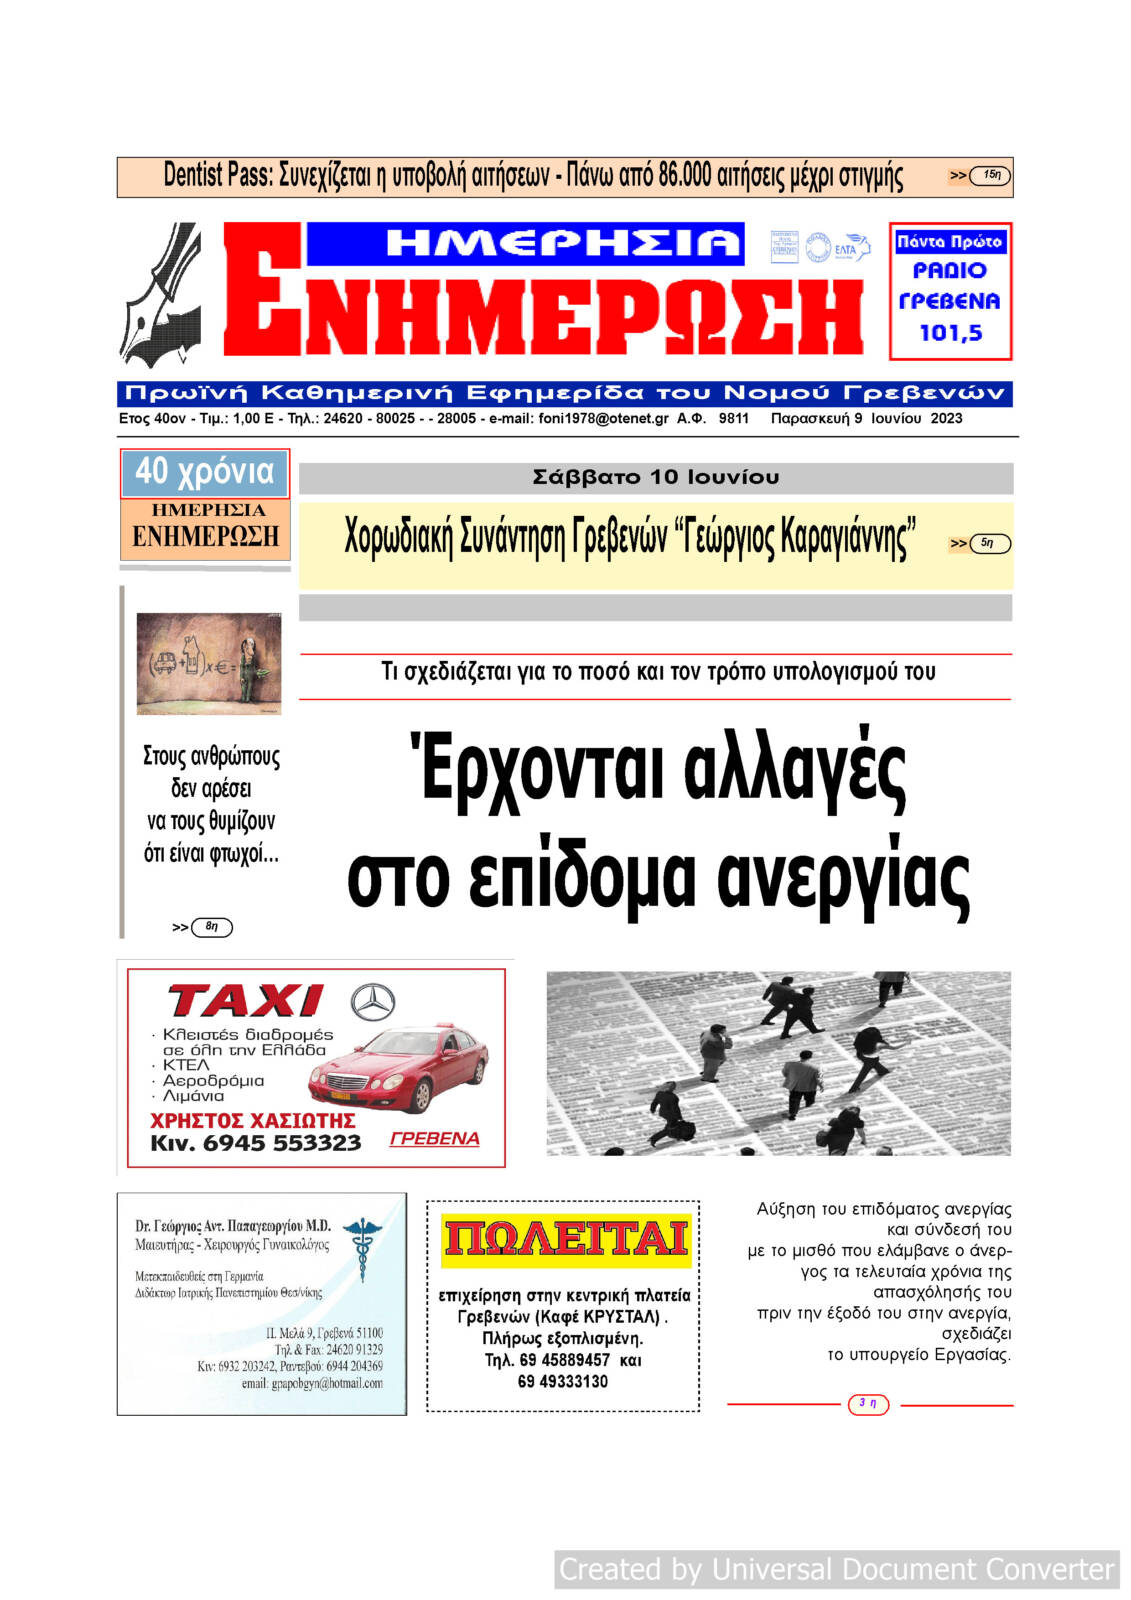 Παρασκευή 9 Ιουνίου: Η πρώτη σελίδα της Καθημερινής Εφημερίδας “ΗΜΕΡΗΣΙΑ ΕΝΗΜΕΡΩΣΗ” Γρεβενών